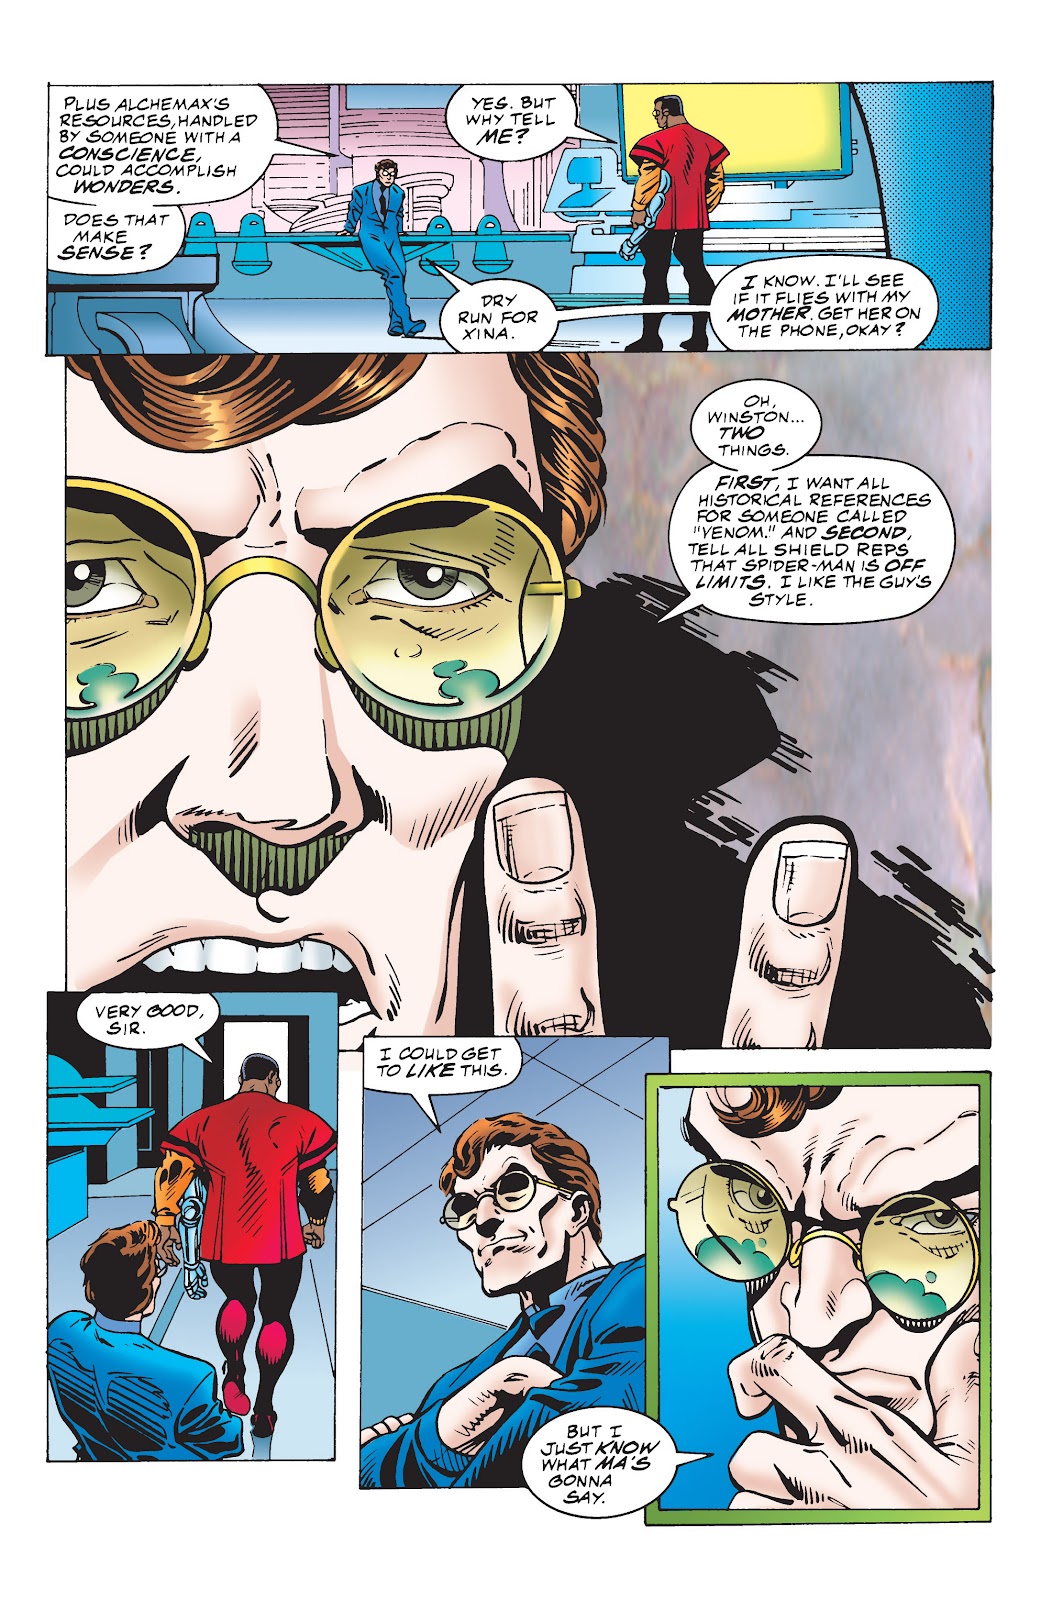 Spider-Man 2099 vs. Venom 2099 issue TPB (Part 3) - Page 15